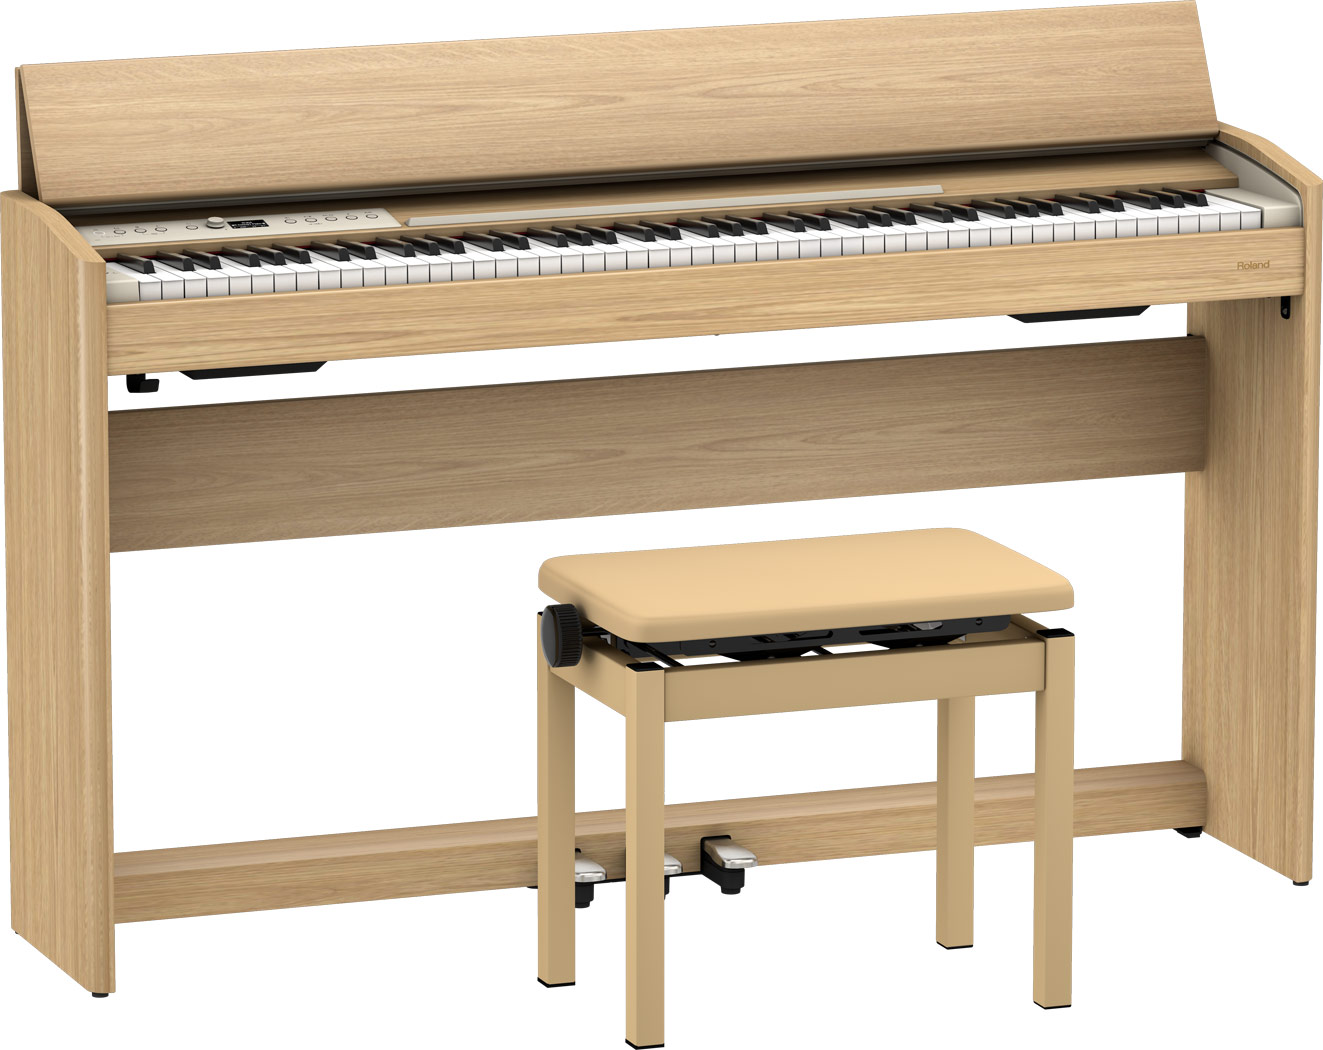 電子ピアノ|新製品|Rolandのコンパクトなエントリーモデル「F701」発売決定